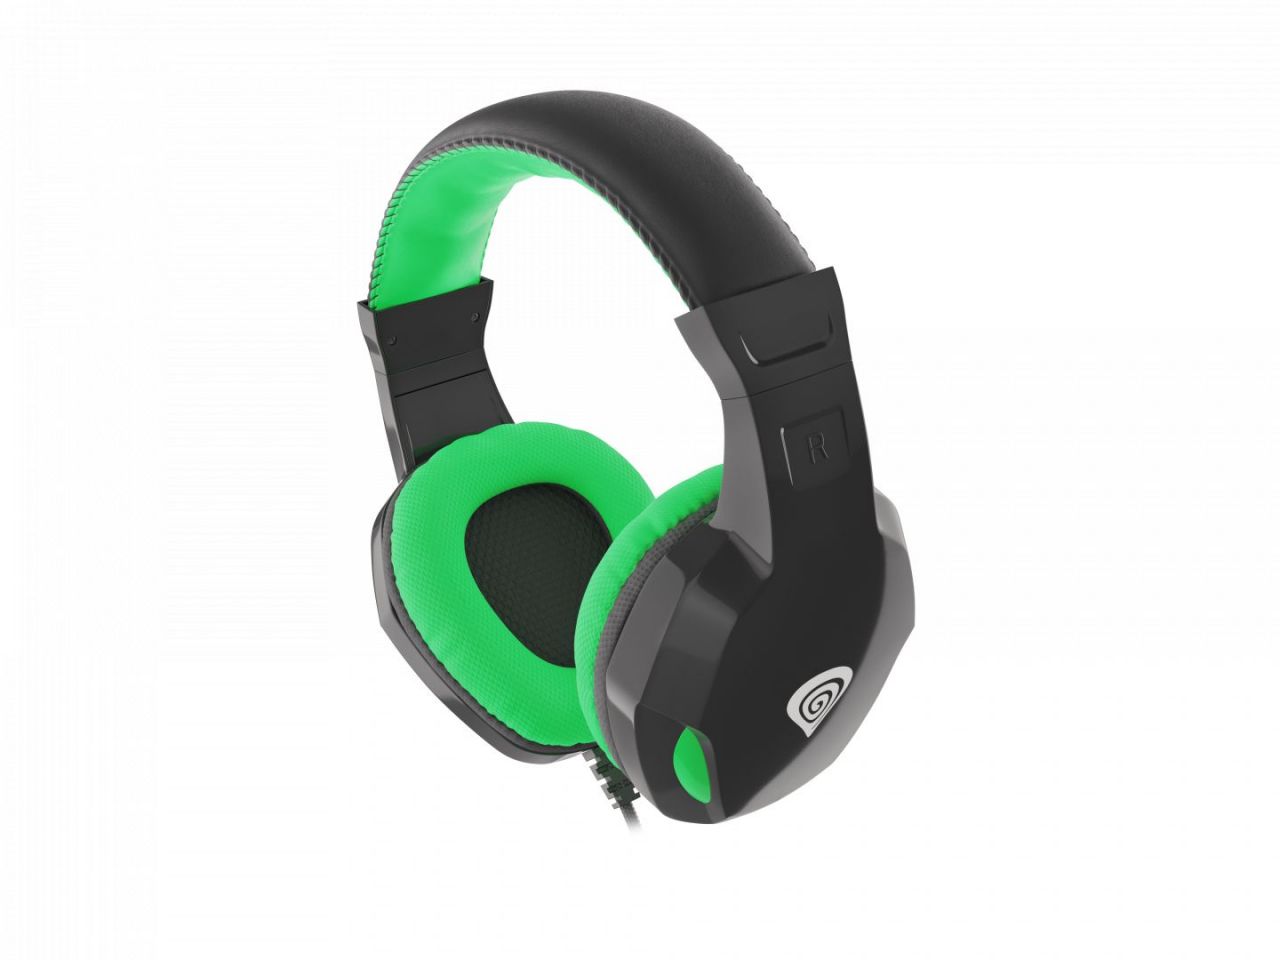 Natec Genesis Argon 100 Gamer Headset Black/Green